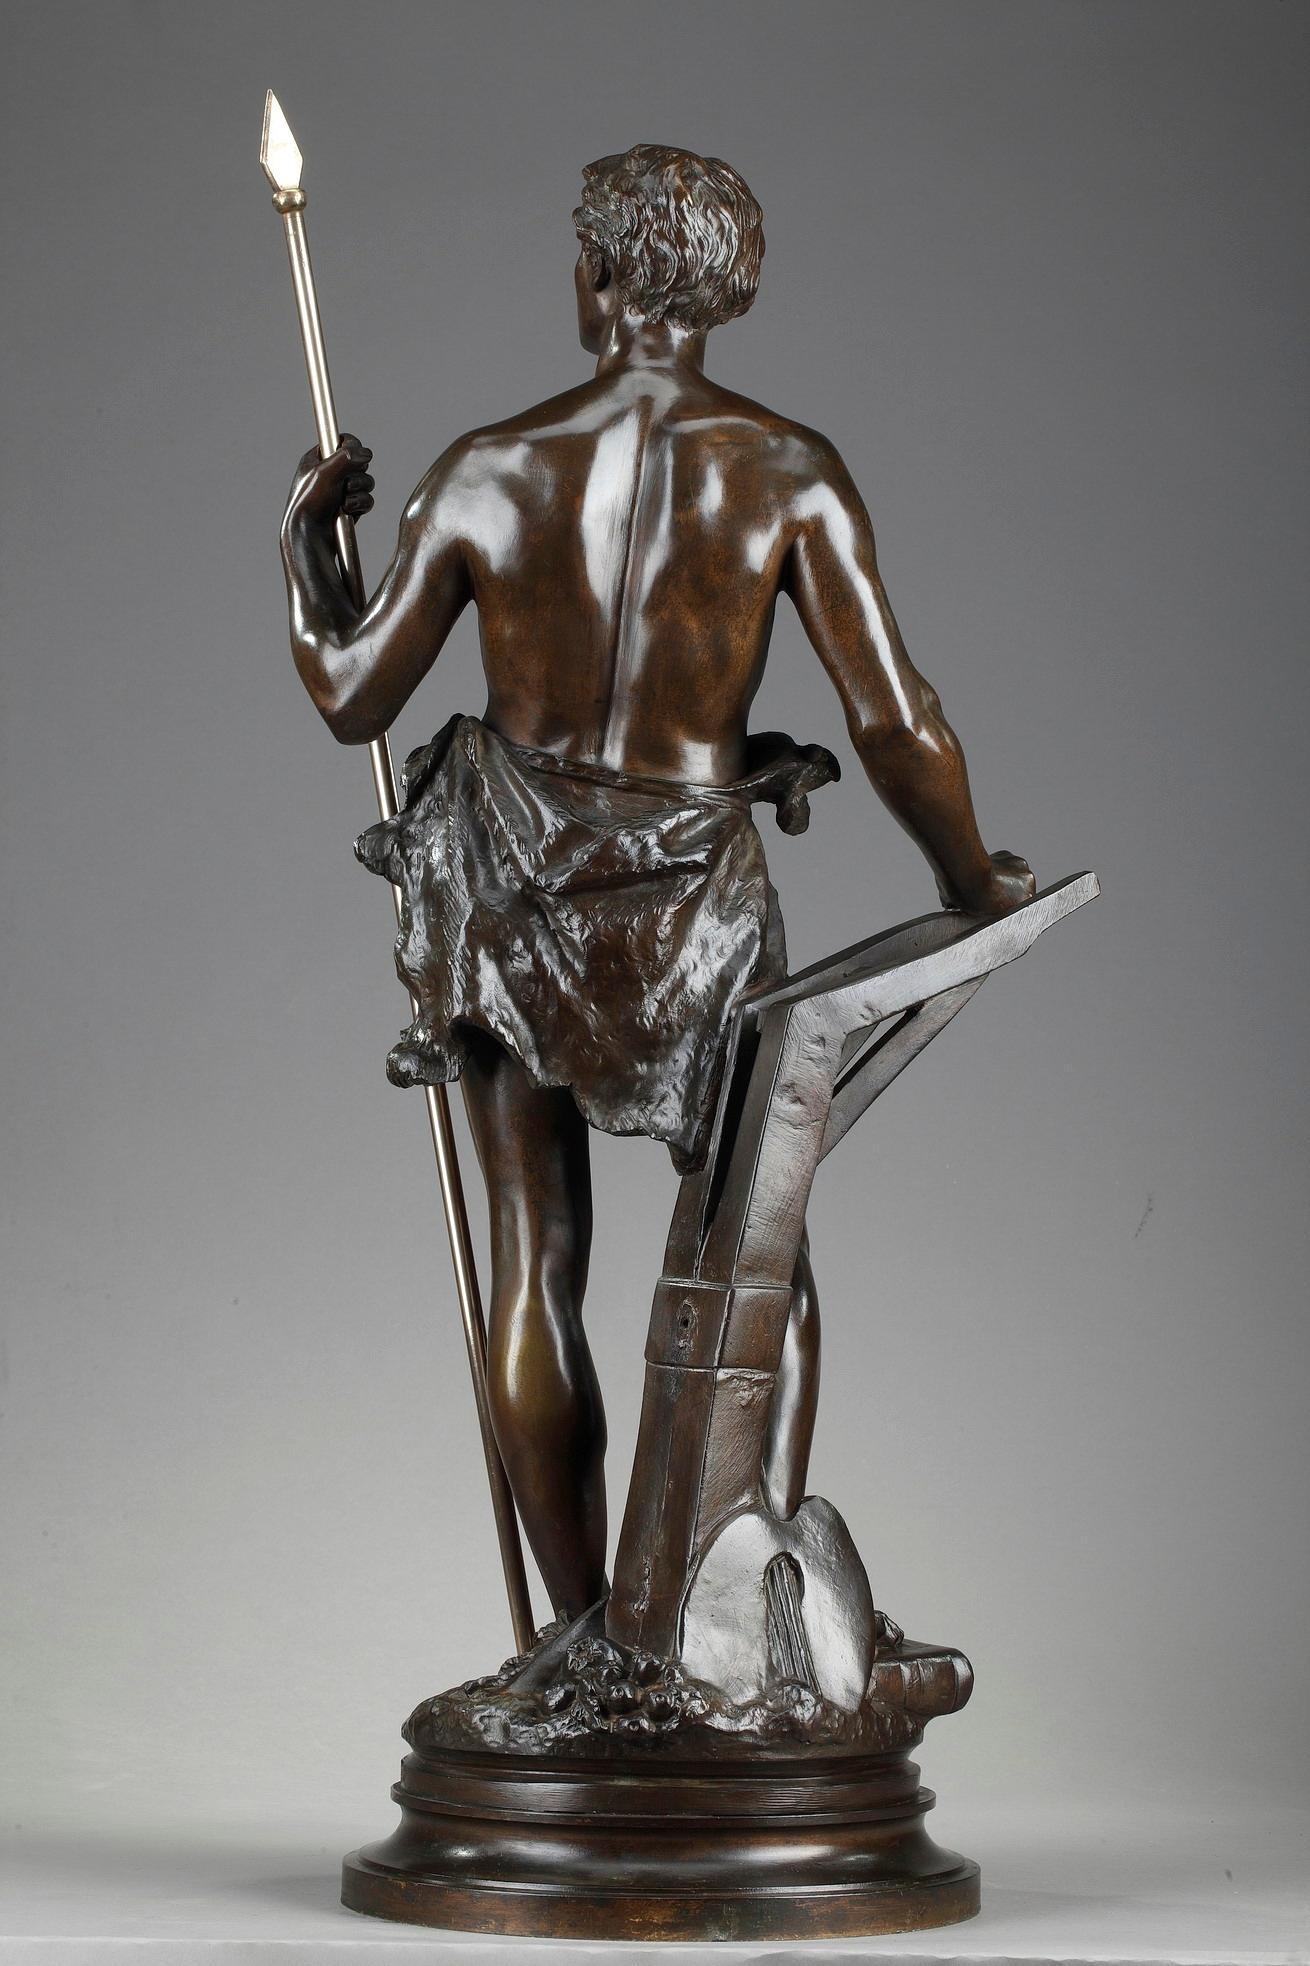 Sculpture en bronze à patine brune d'Ernest Rancoulet représentant une allégorie du travail avec un jeune homme tenant une lance, qui symbolise le triomphe de la sagesse acquise par le travail et l'étude. À ses pieds, plusieurs objets font référence